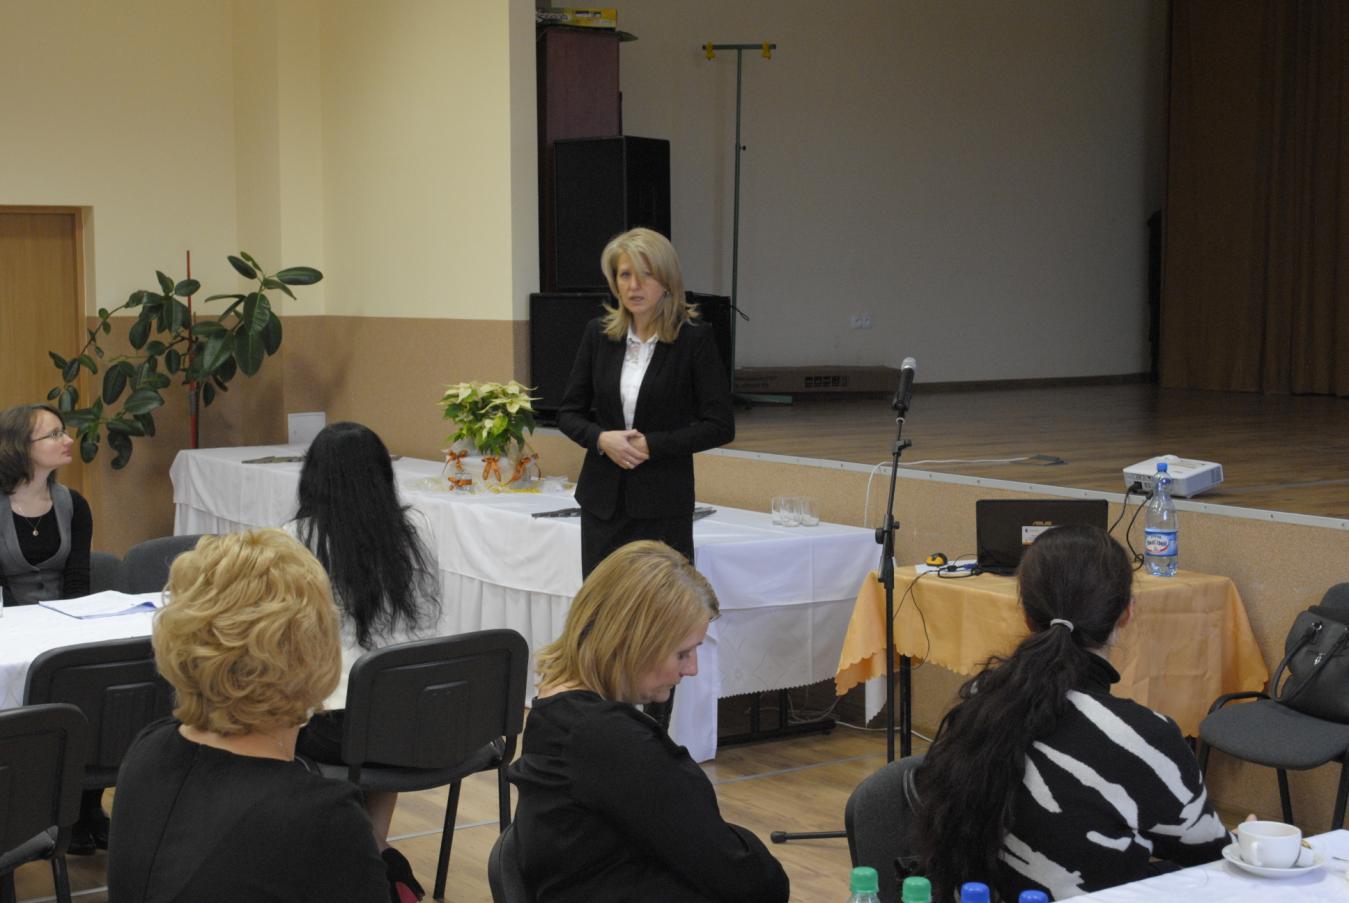 W konferencji uczestniczyli również przedstawiciele Powiatowego Urzędu Pracy w Kaliszu Pani Dorota Kończyńska oraz Pani Elżbieta Kaźmierczak.